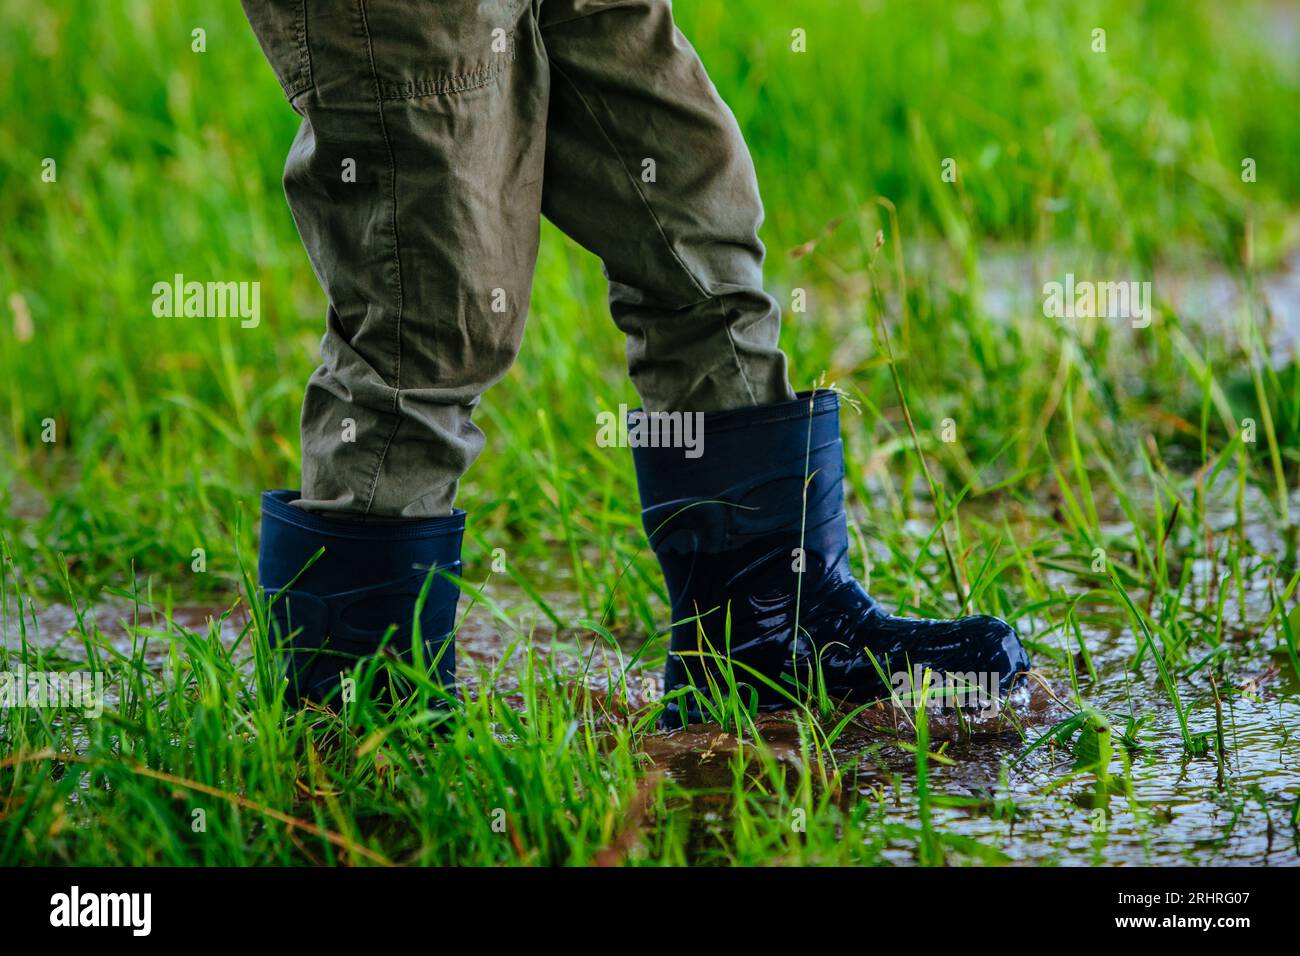 Junge in Gummistiefeln, die nach dem Regen auf nassem Gras laufen Stockfoto